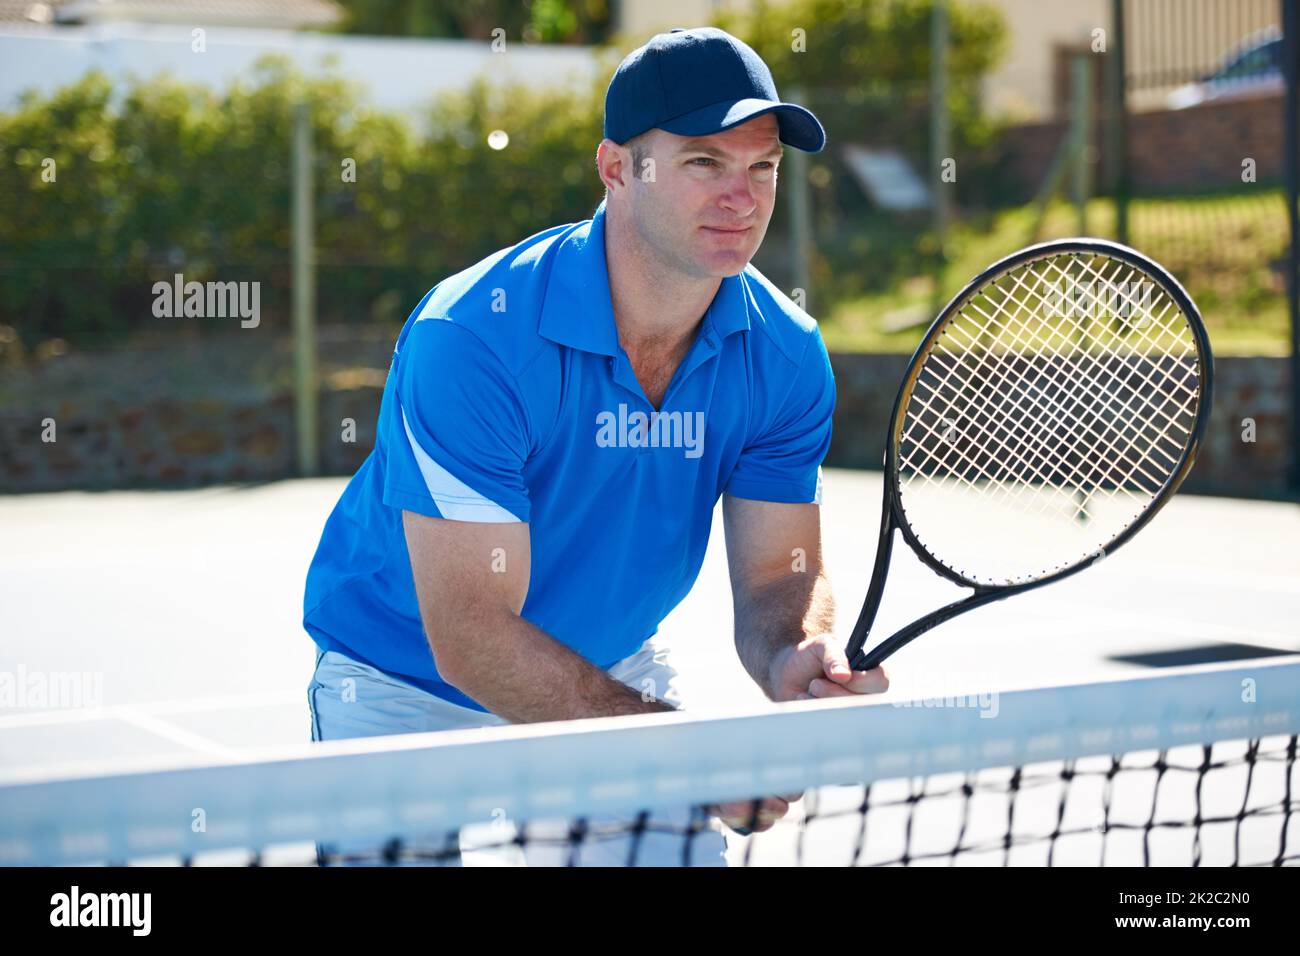 Das Netz schützen. Ein männlicher Tennisspieler, der am Netz steht und auf den Gegenschuss wartet. Stockfoto